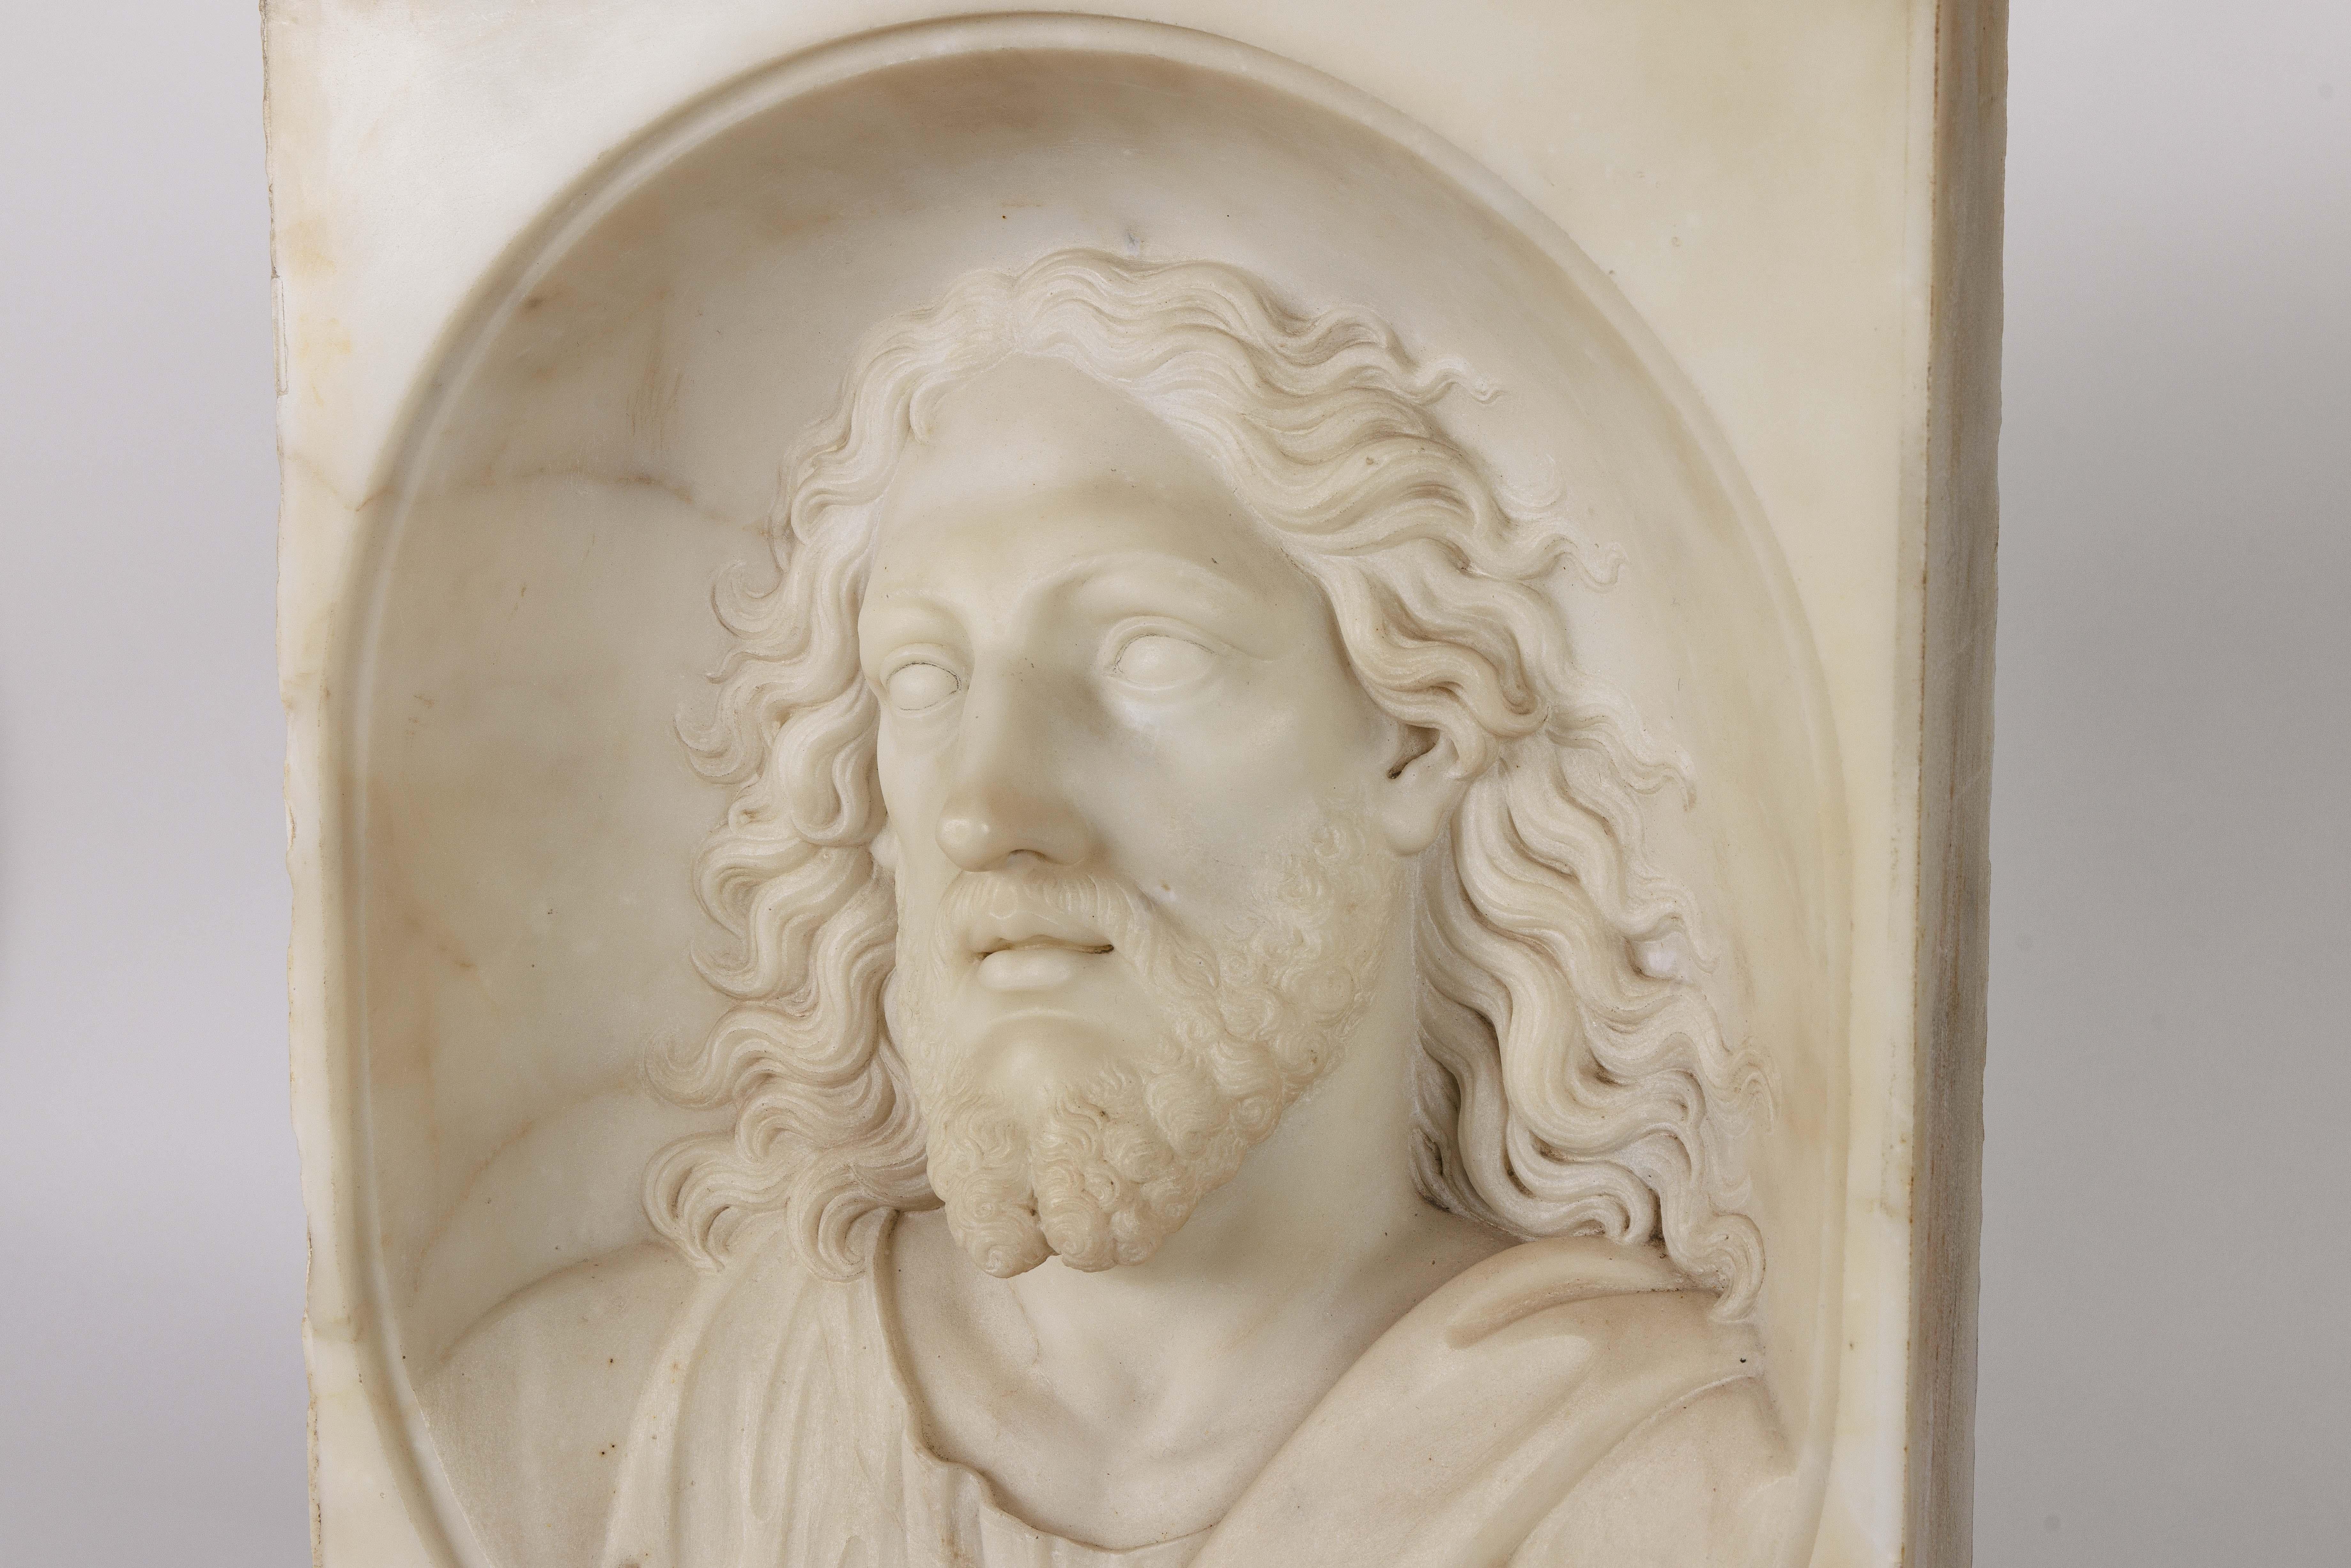 Seltene und bedeutende italienische Büste aus weißem Marmor von Jesus Christus, um 1850

Ein wirklich außergewöhnlich geschnitztes Marmorrelief des Heiligen Jesus Christus. Sehr kraftvoll und dramatisch - eine museumswürdige Skulptur.

Unsigniert,